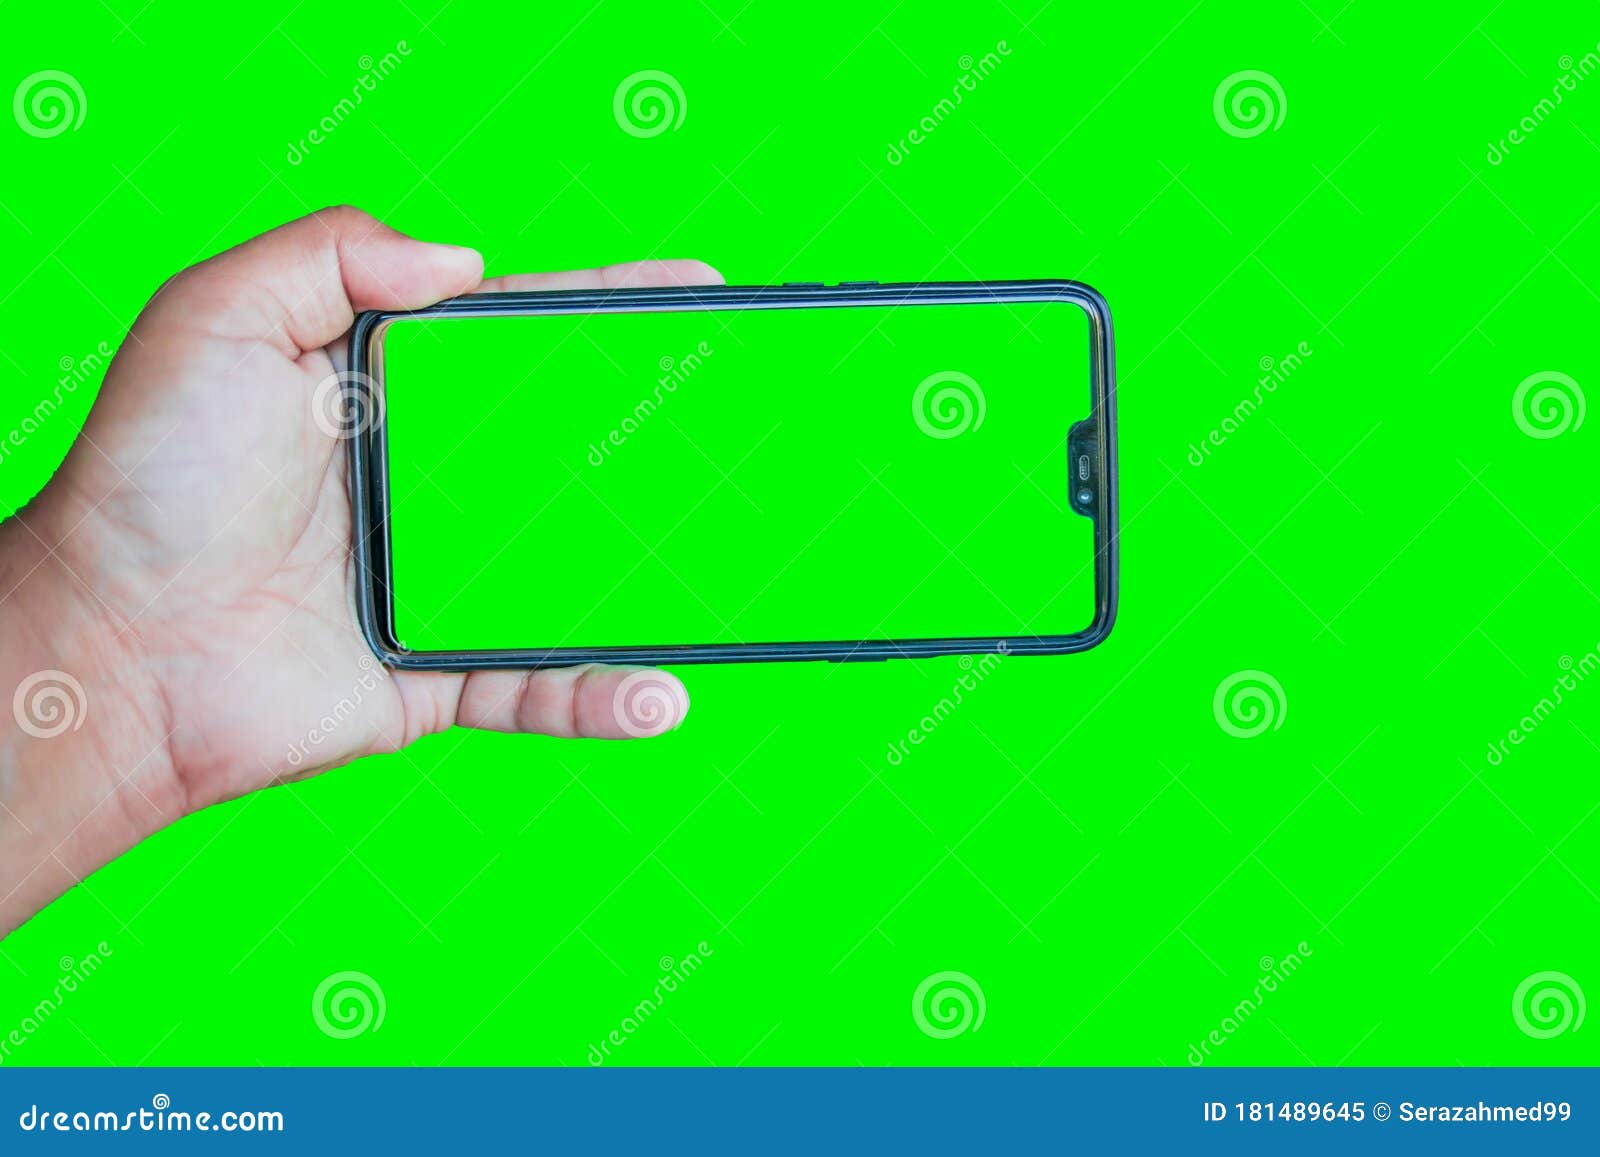 Màn hình Chroma key điện thoại xanh lá cây có thể giúp bạn tạo ra những sáng tạo độc đáo cho các dự án của mình. Hình ảnh liên quan sẽ giúp bạn thấy được sức mạnh của công nghệ trong việc tạo ra những bức ảnh và video sáng tạo, chuyên nghiệp và tùy chỉnh cao.